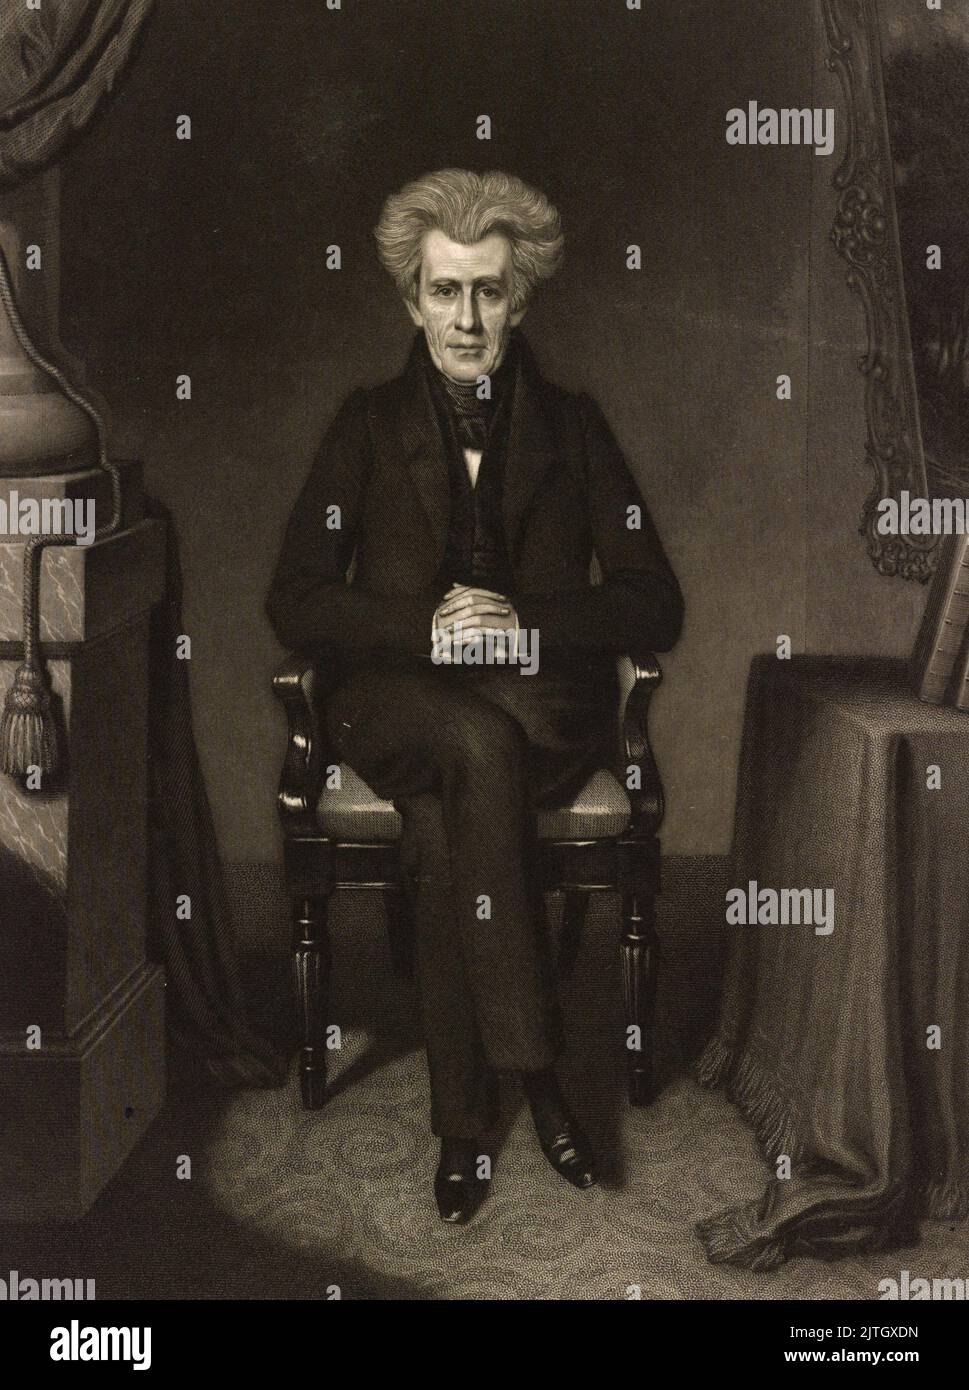 Ein Stich von J. Sartain über Präsident Andrew Jackson, der der siebte Präsident der USA war. Stockfoto